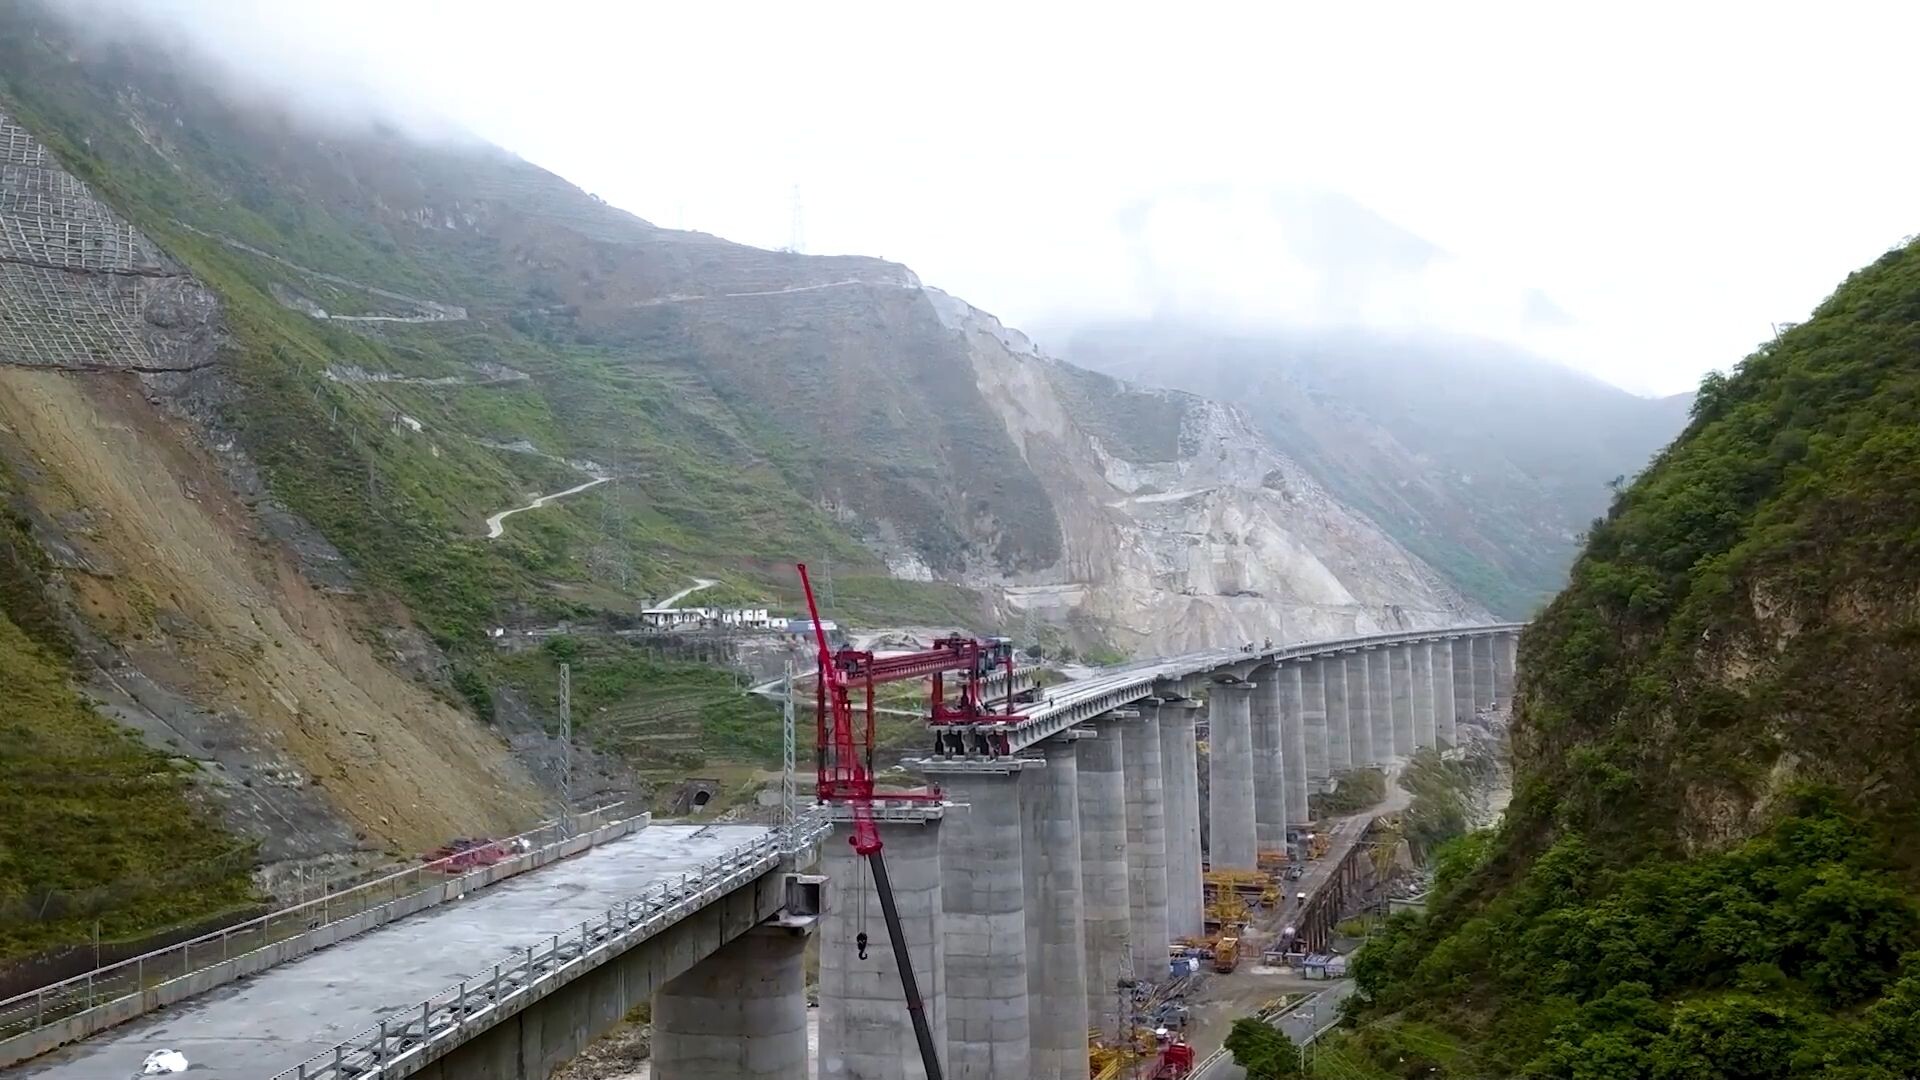 'ทางรถไฟเฉิงตู-คุนหมิง' สายใหม่ ติดตั้งคานสะพานเสร็จสมบูรณ์แล้ว